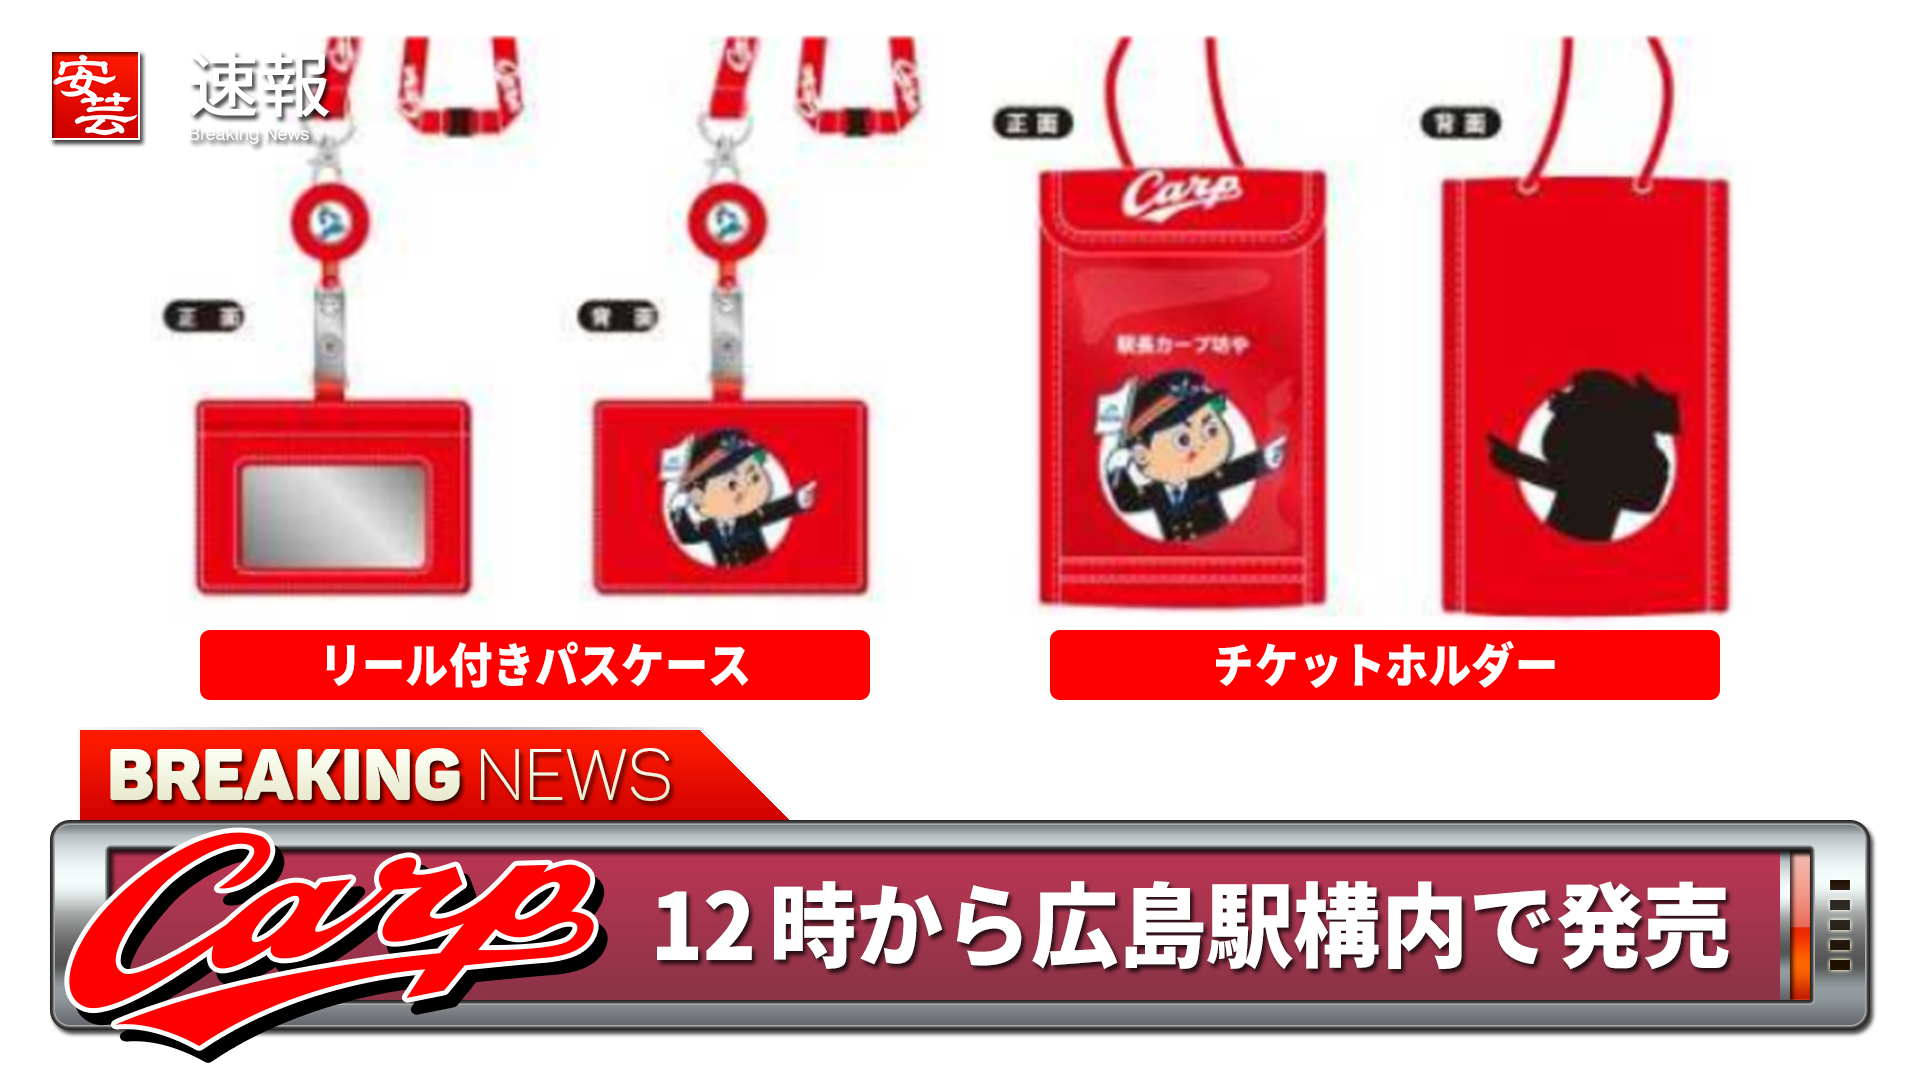 【新品未使用品】JR西日本✖️カープコラボリール付きパスケース自宅保管しておりました